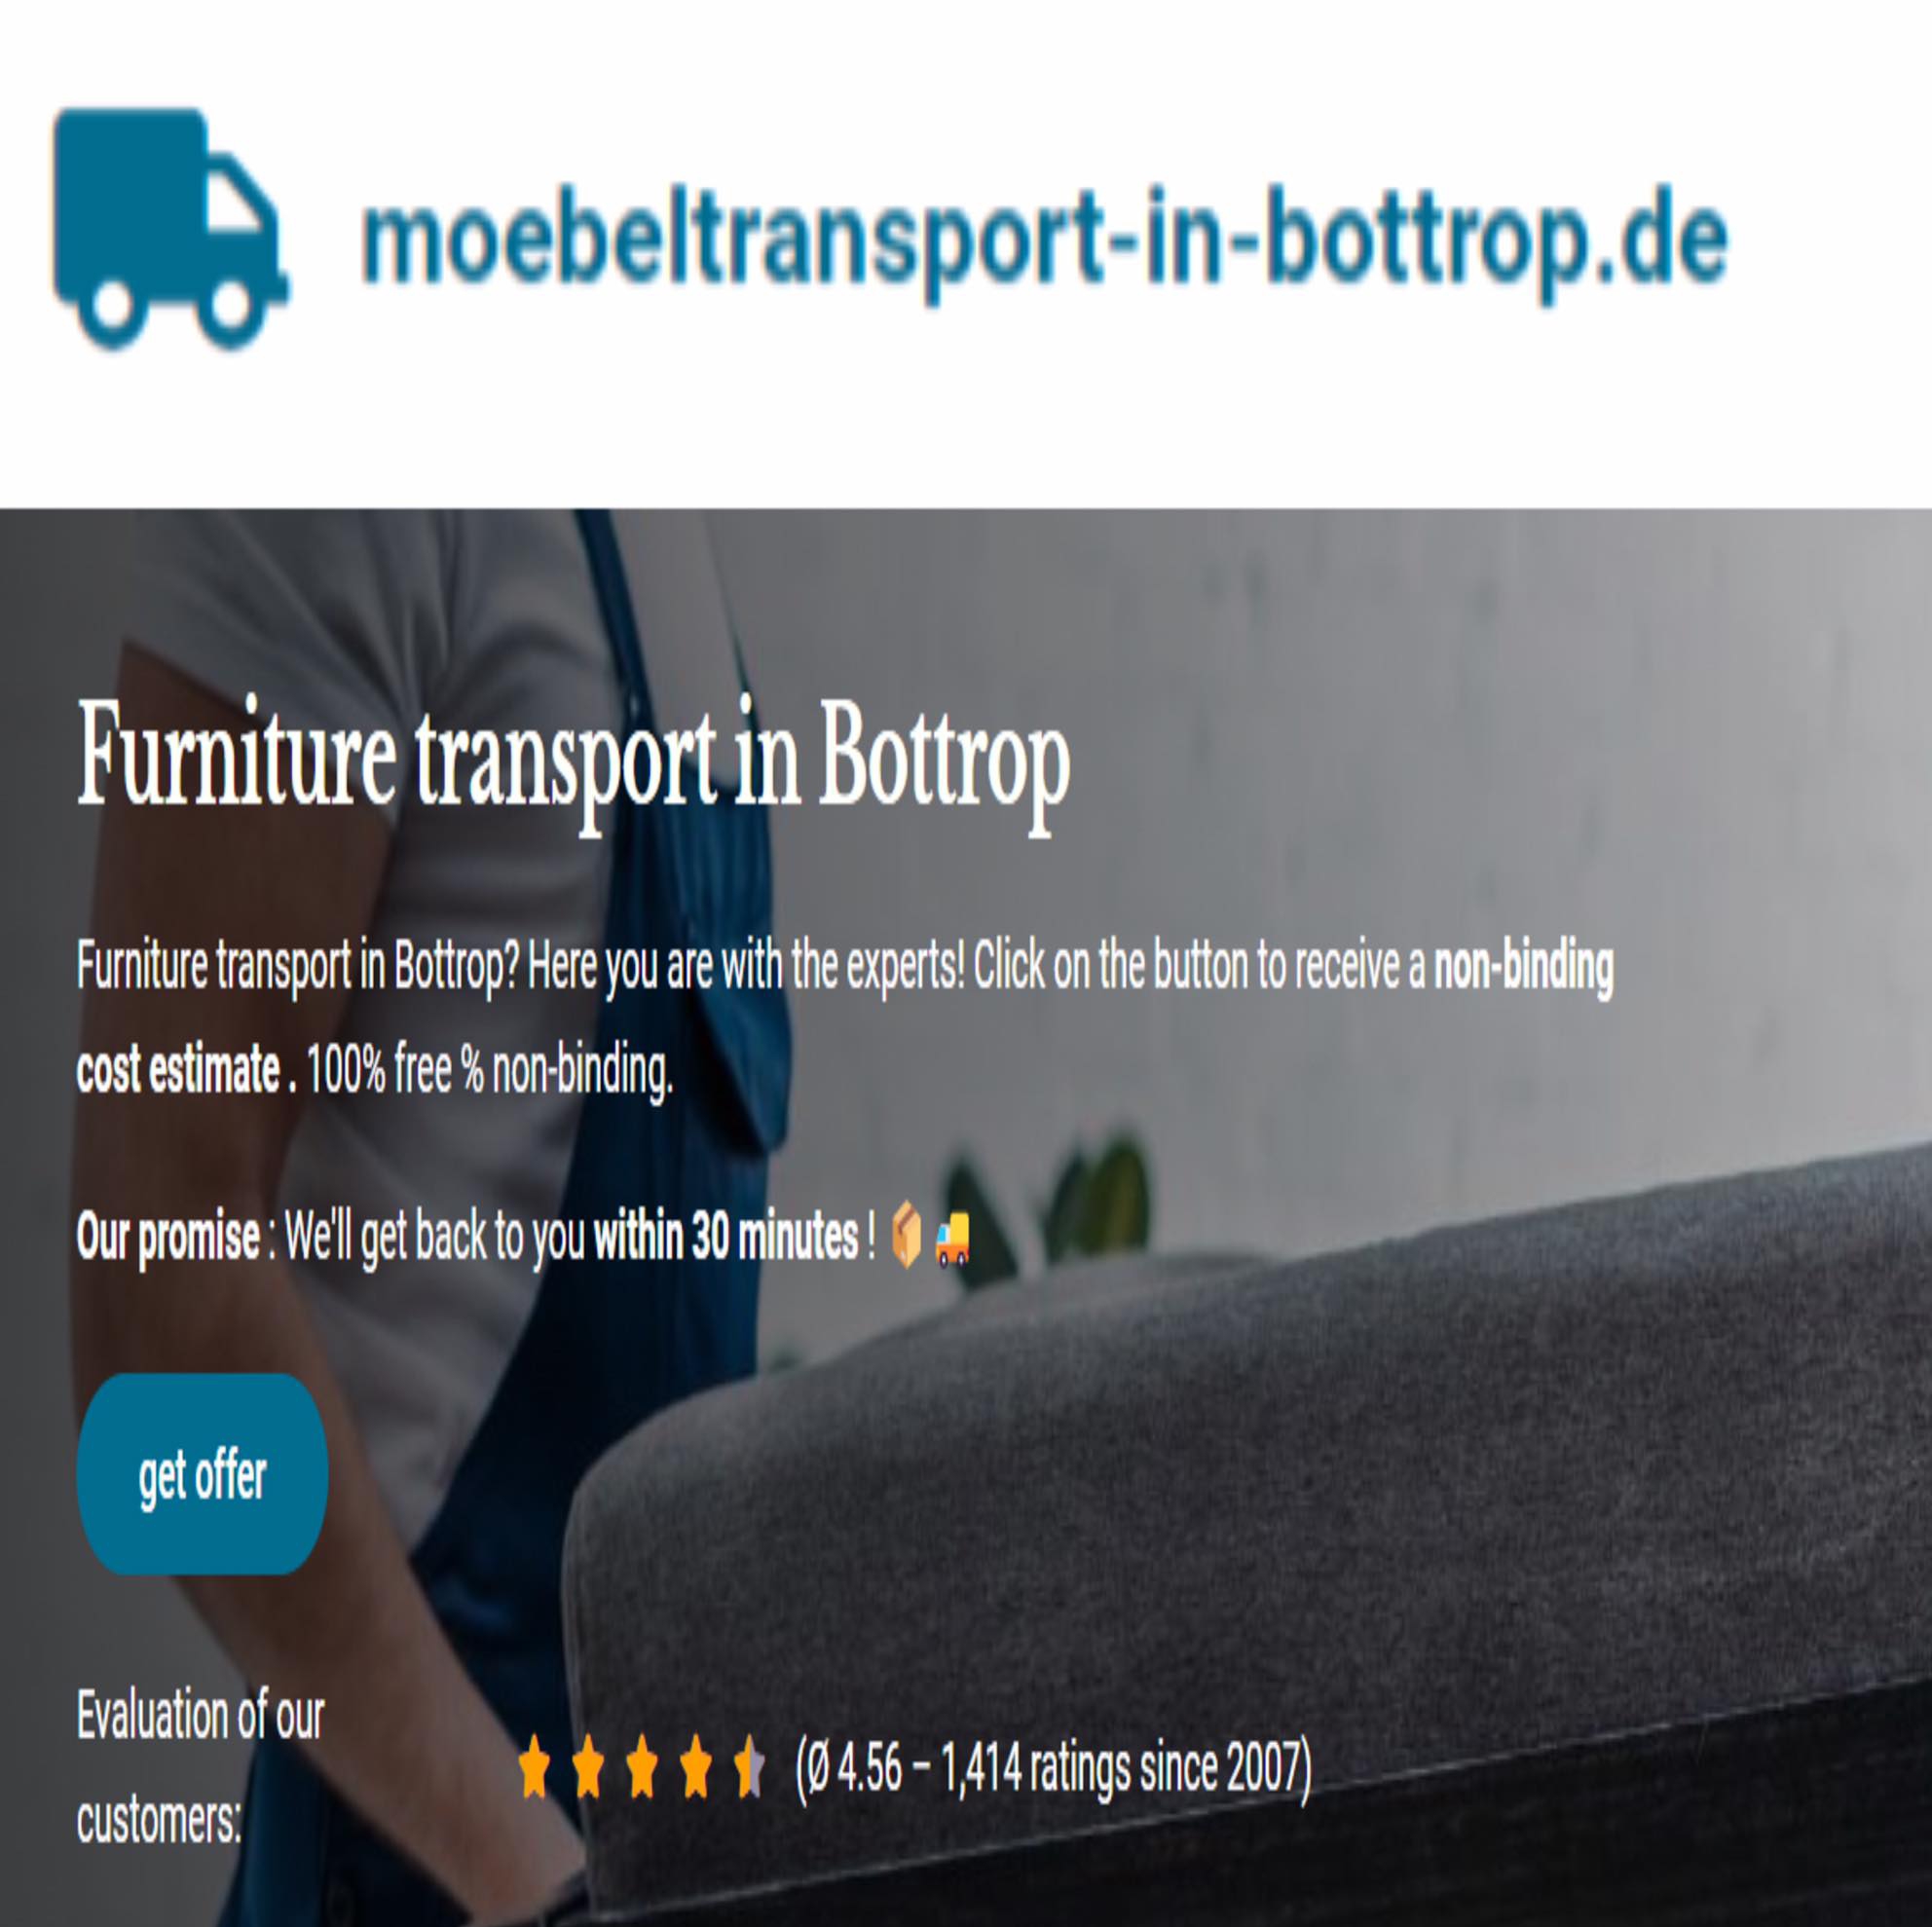 moebeltransport-in-bottrop.de in Bottrop